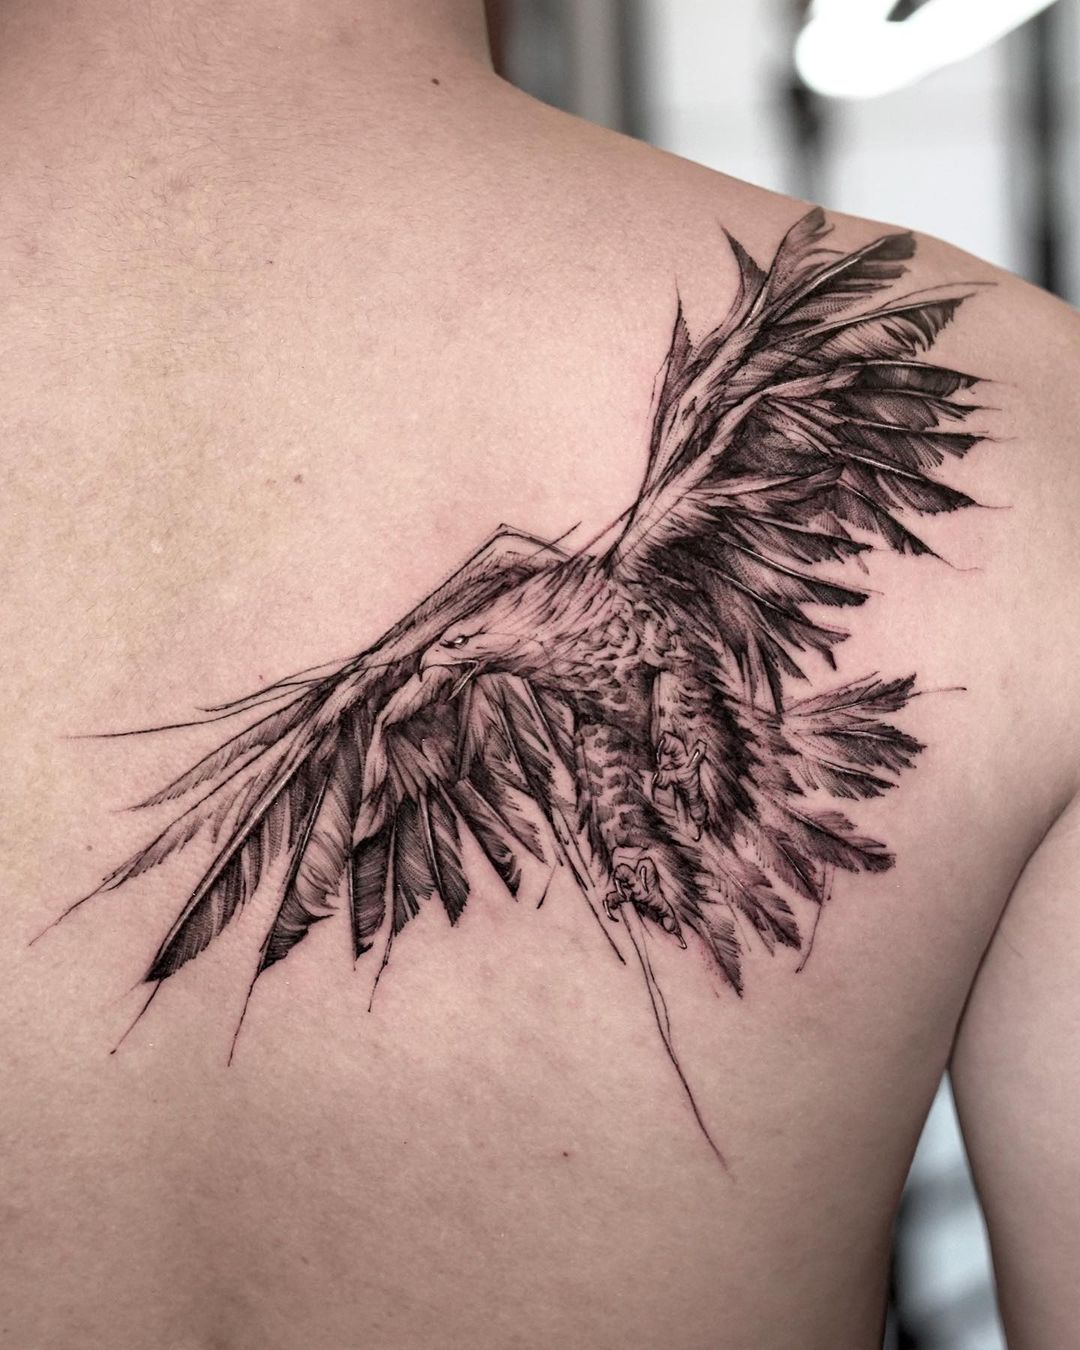 Bald eagle tattoo by bk tattooer